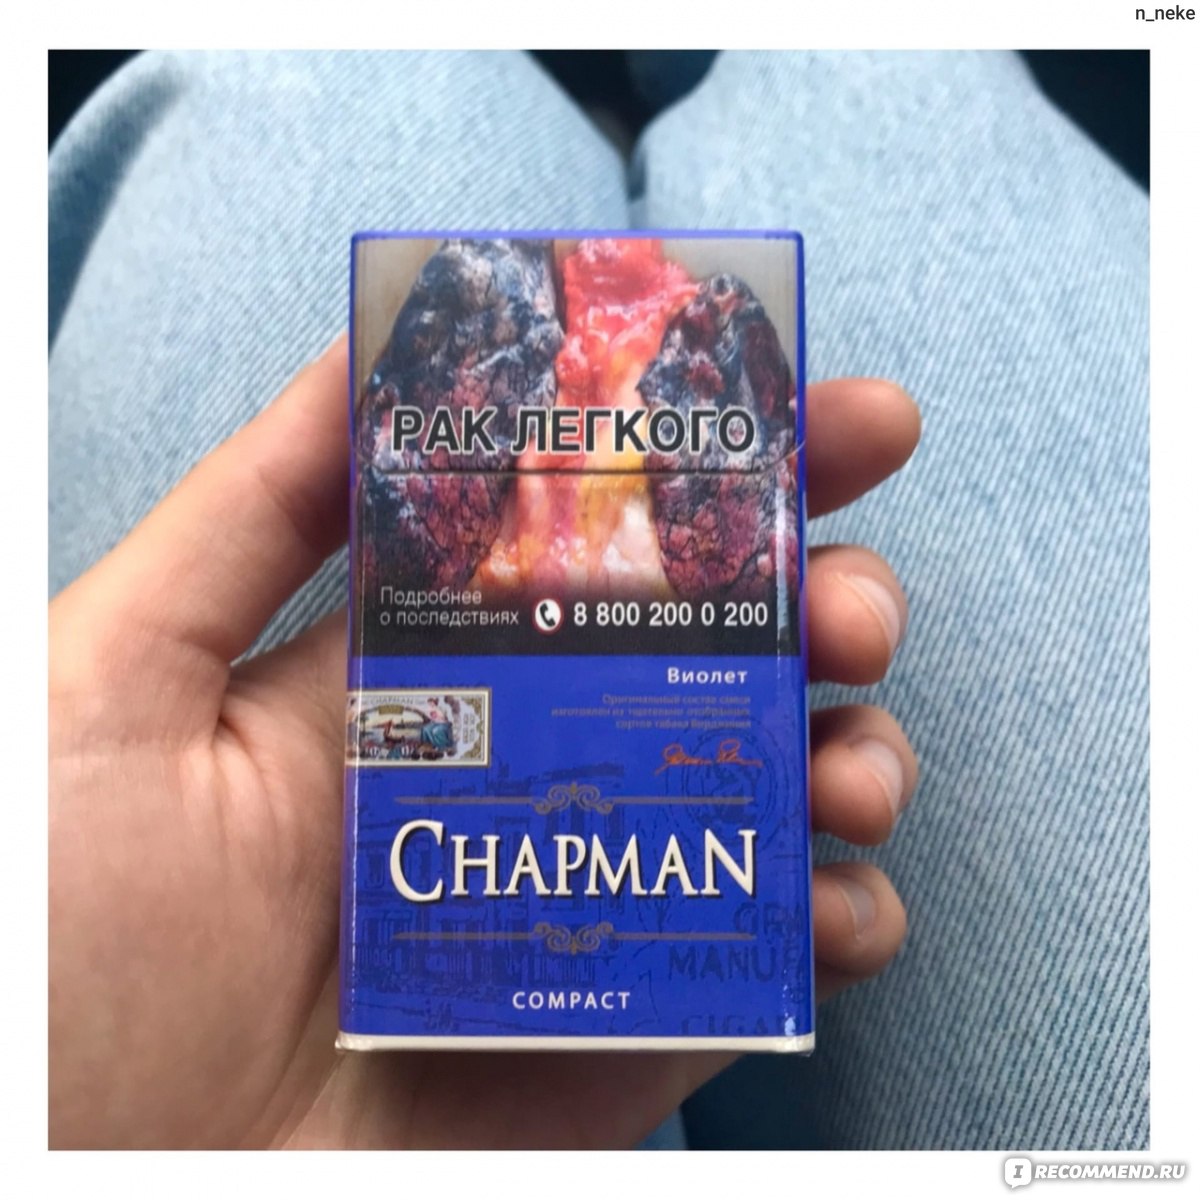 Виды сигарет чапман. Chapman Виолет компакт сигареты. Сигареты “Chapman Браун” компакт. Сигареты Чапман Браун тонкие. Сигареты Chapman (Чапман) компакт Violet.